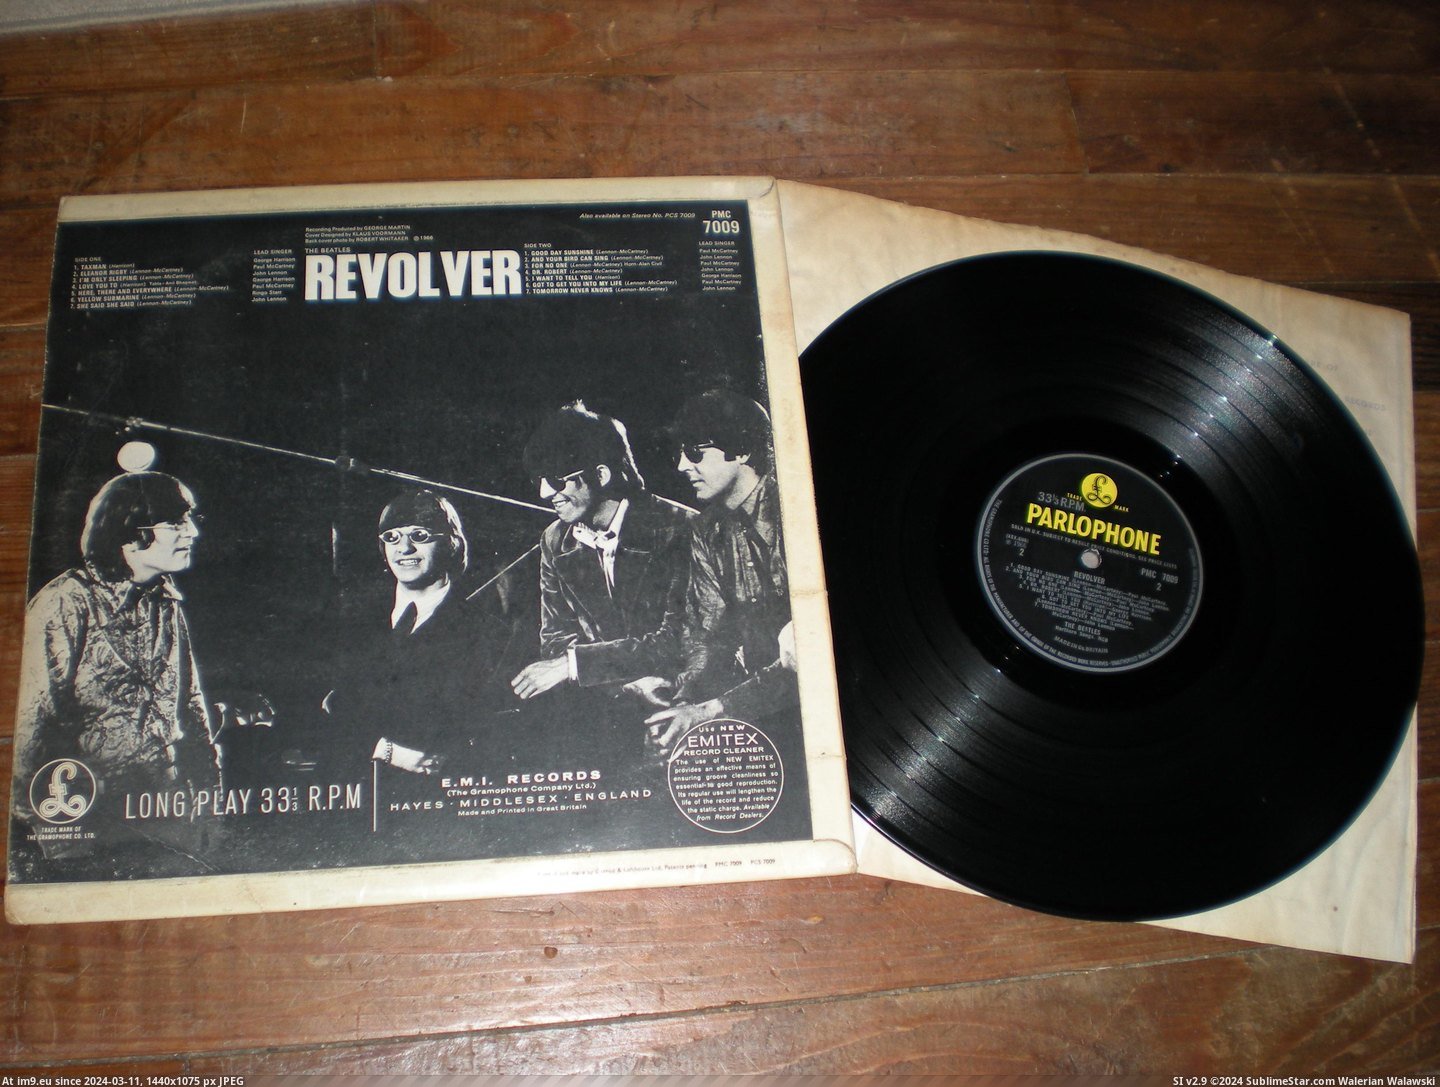  #Revolver  Revolver Mix 11 5 Pic. (Изображение из альбом new 1))